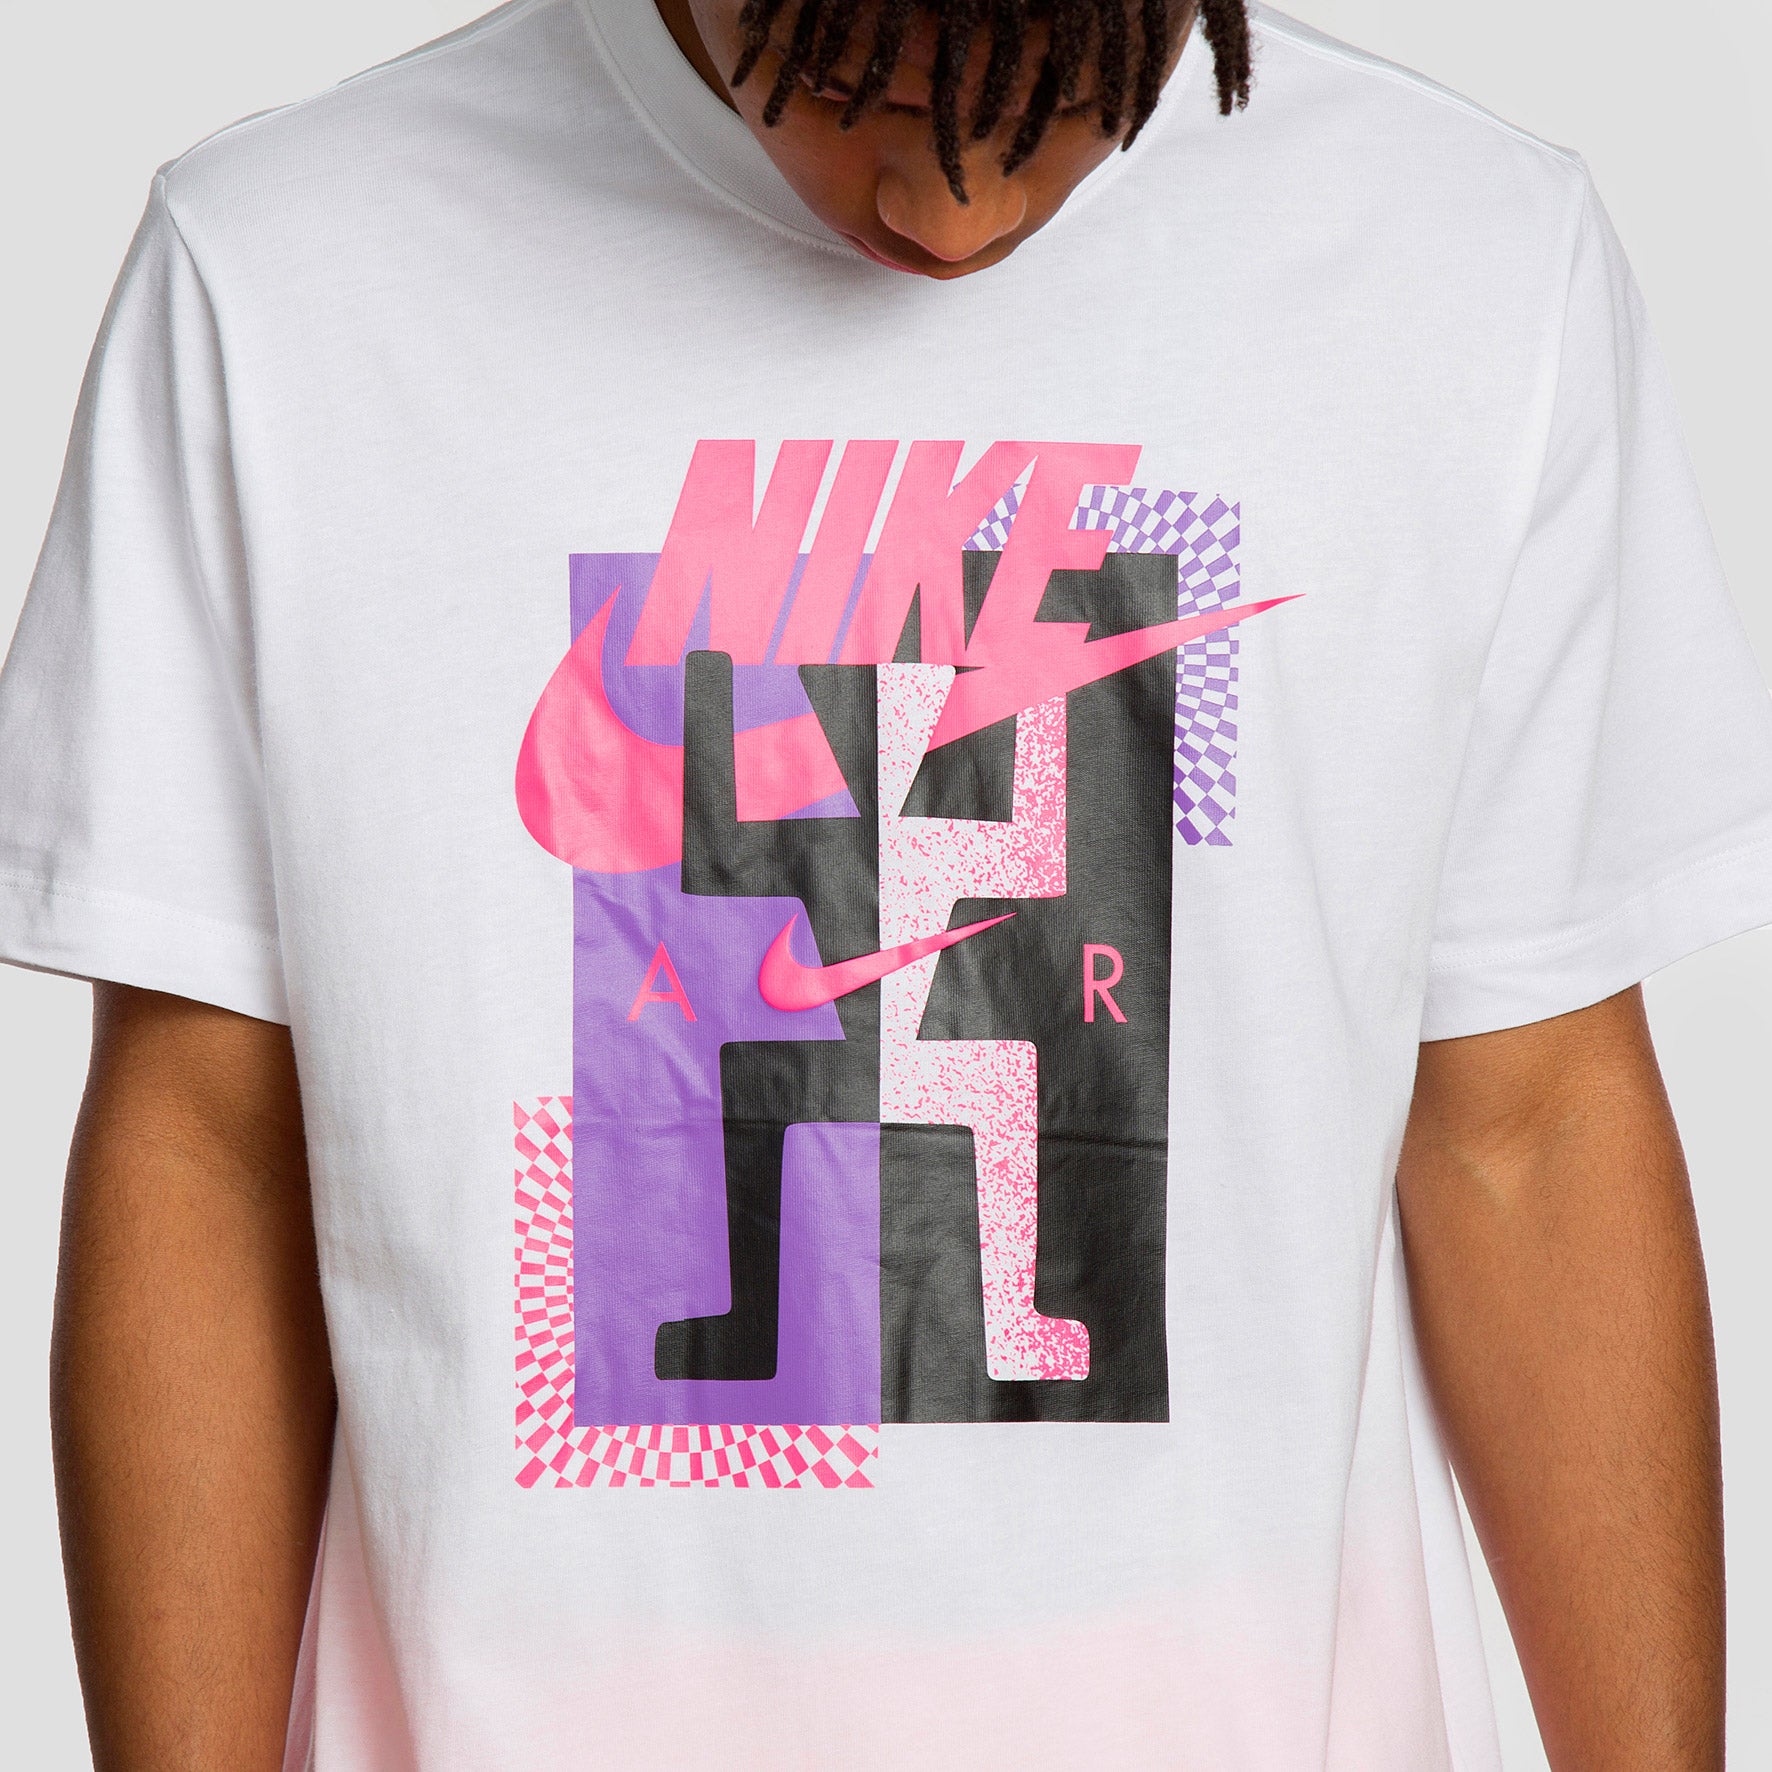  Camiseta Nike de manga corta y cuello redondo. Con un fit regular y fabricada en suave algodón 100.